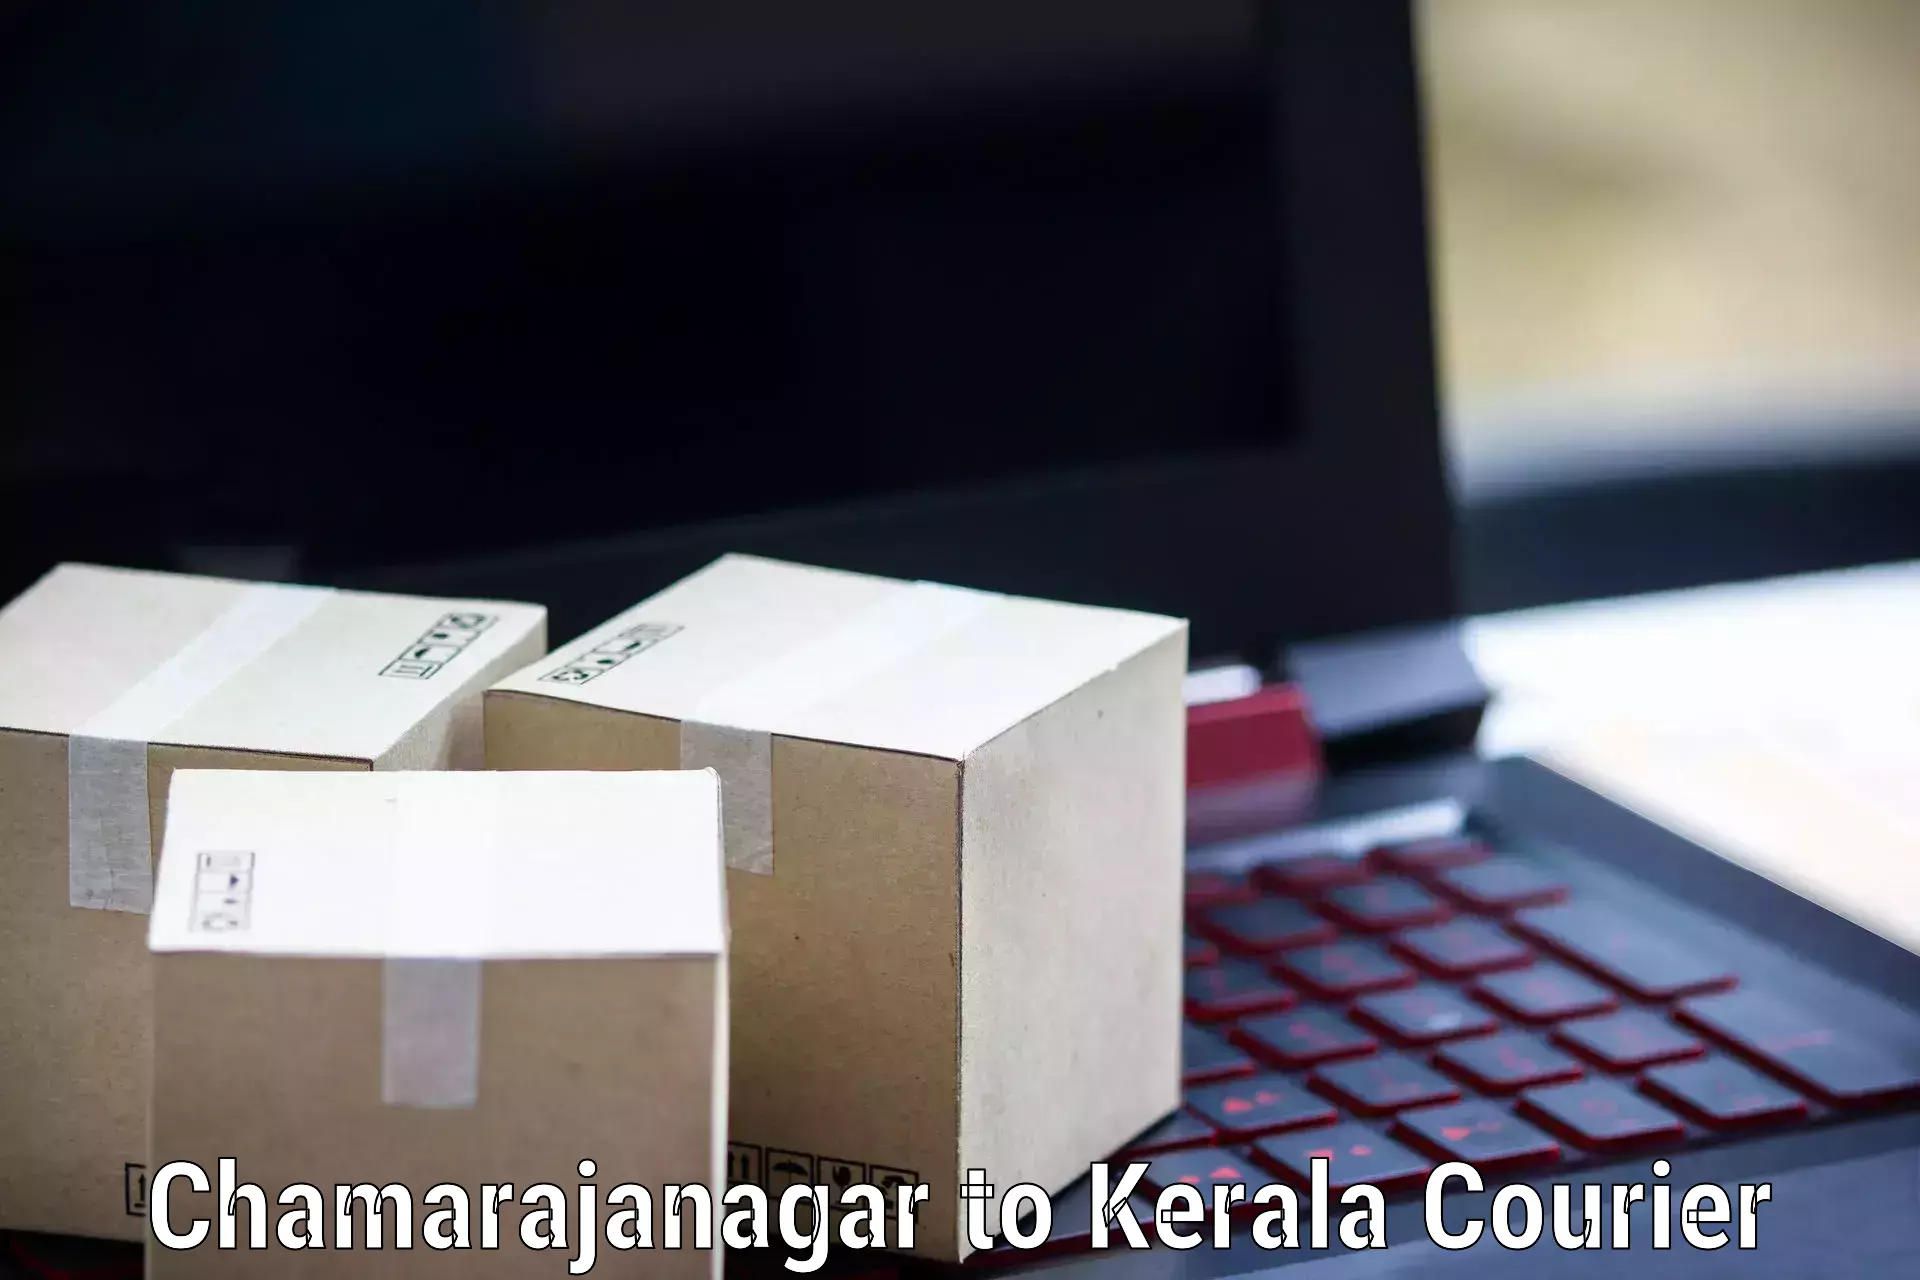 Courier service comparison Chamarajanagar to Allepey